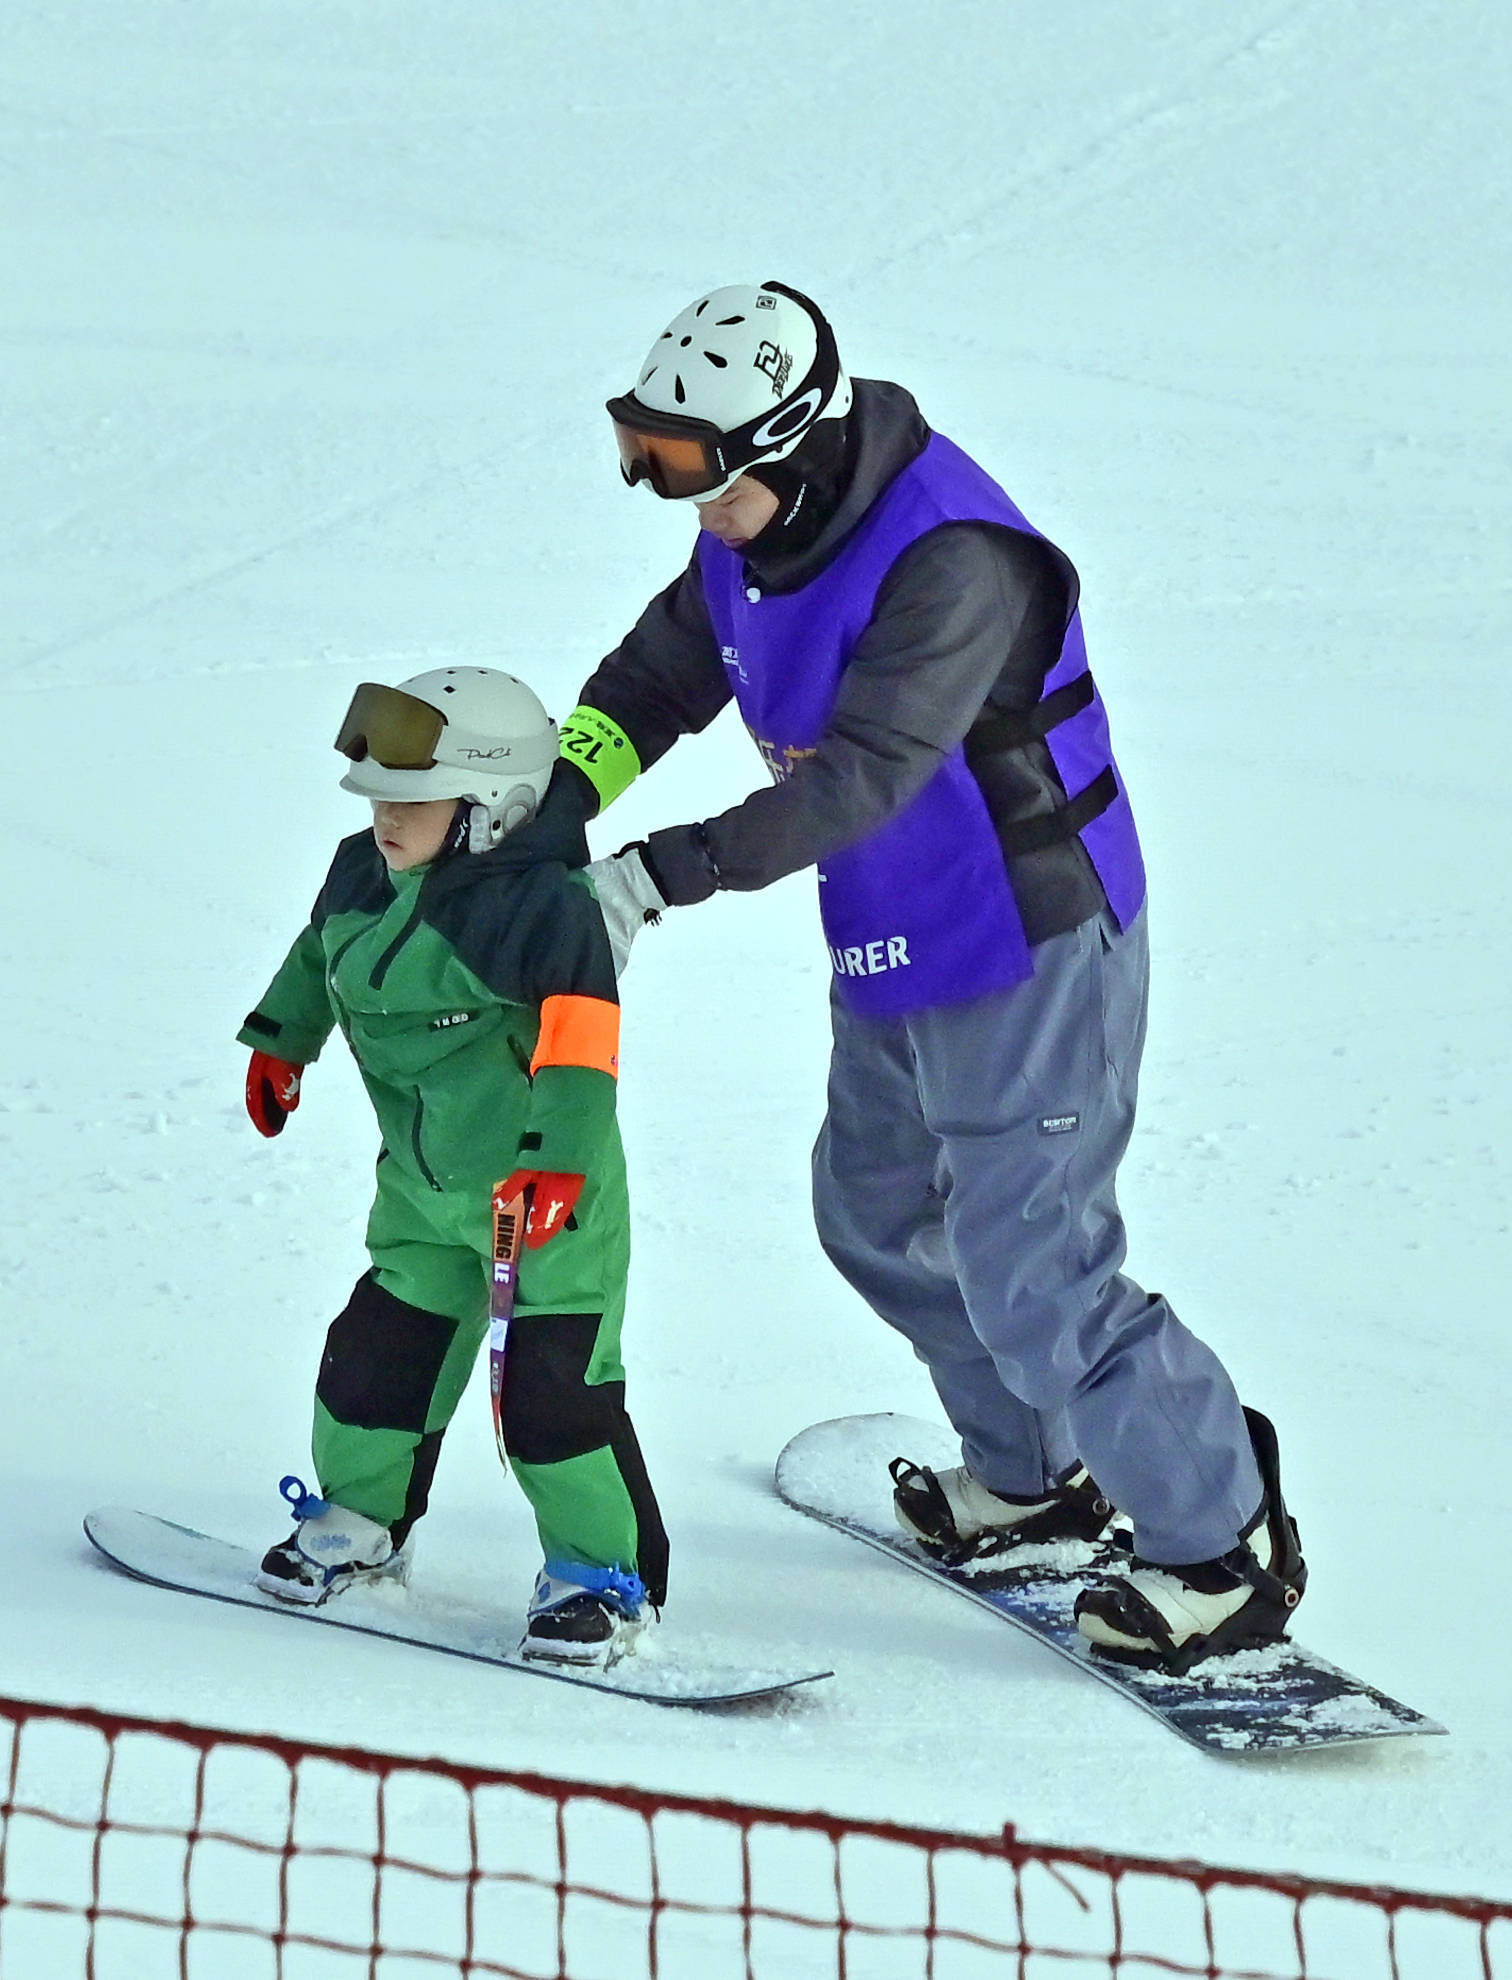 1月13日,在大同市万龙白登山国际滑雪场,缆车载着滑雪爱好者在雪场中